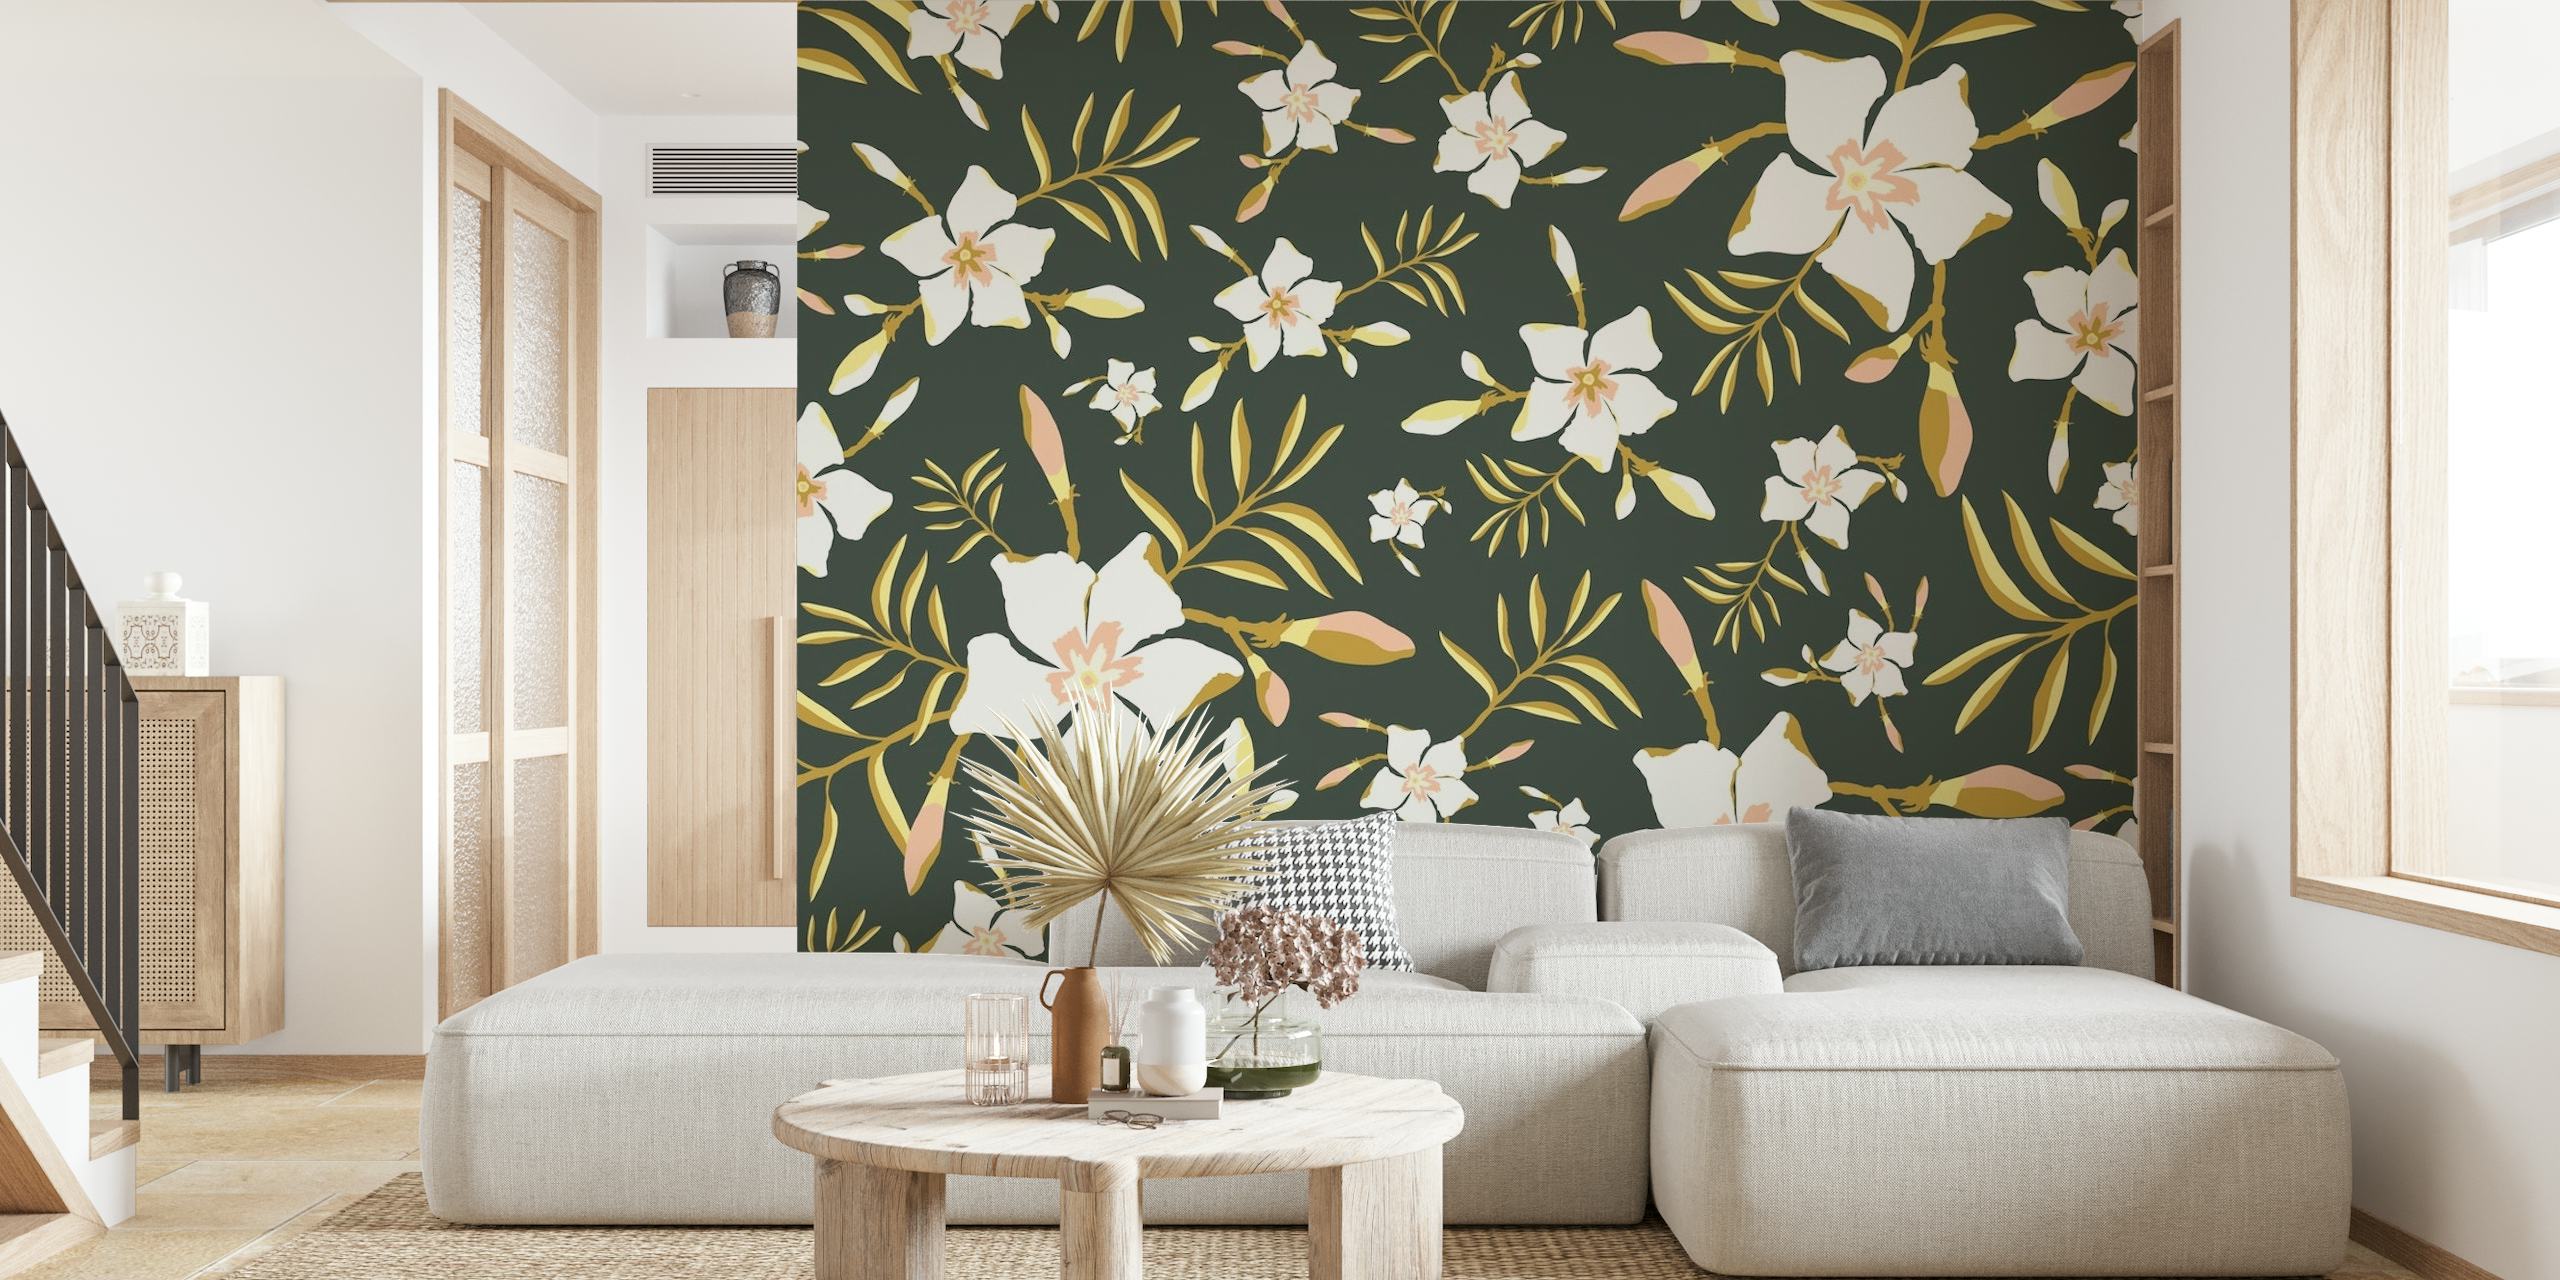 Tropical Floral Grønt vægmaleri med frodigt løv og hvide blomster på en mørk baggrund